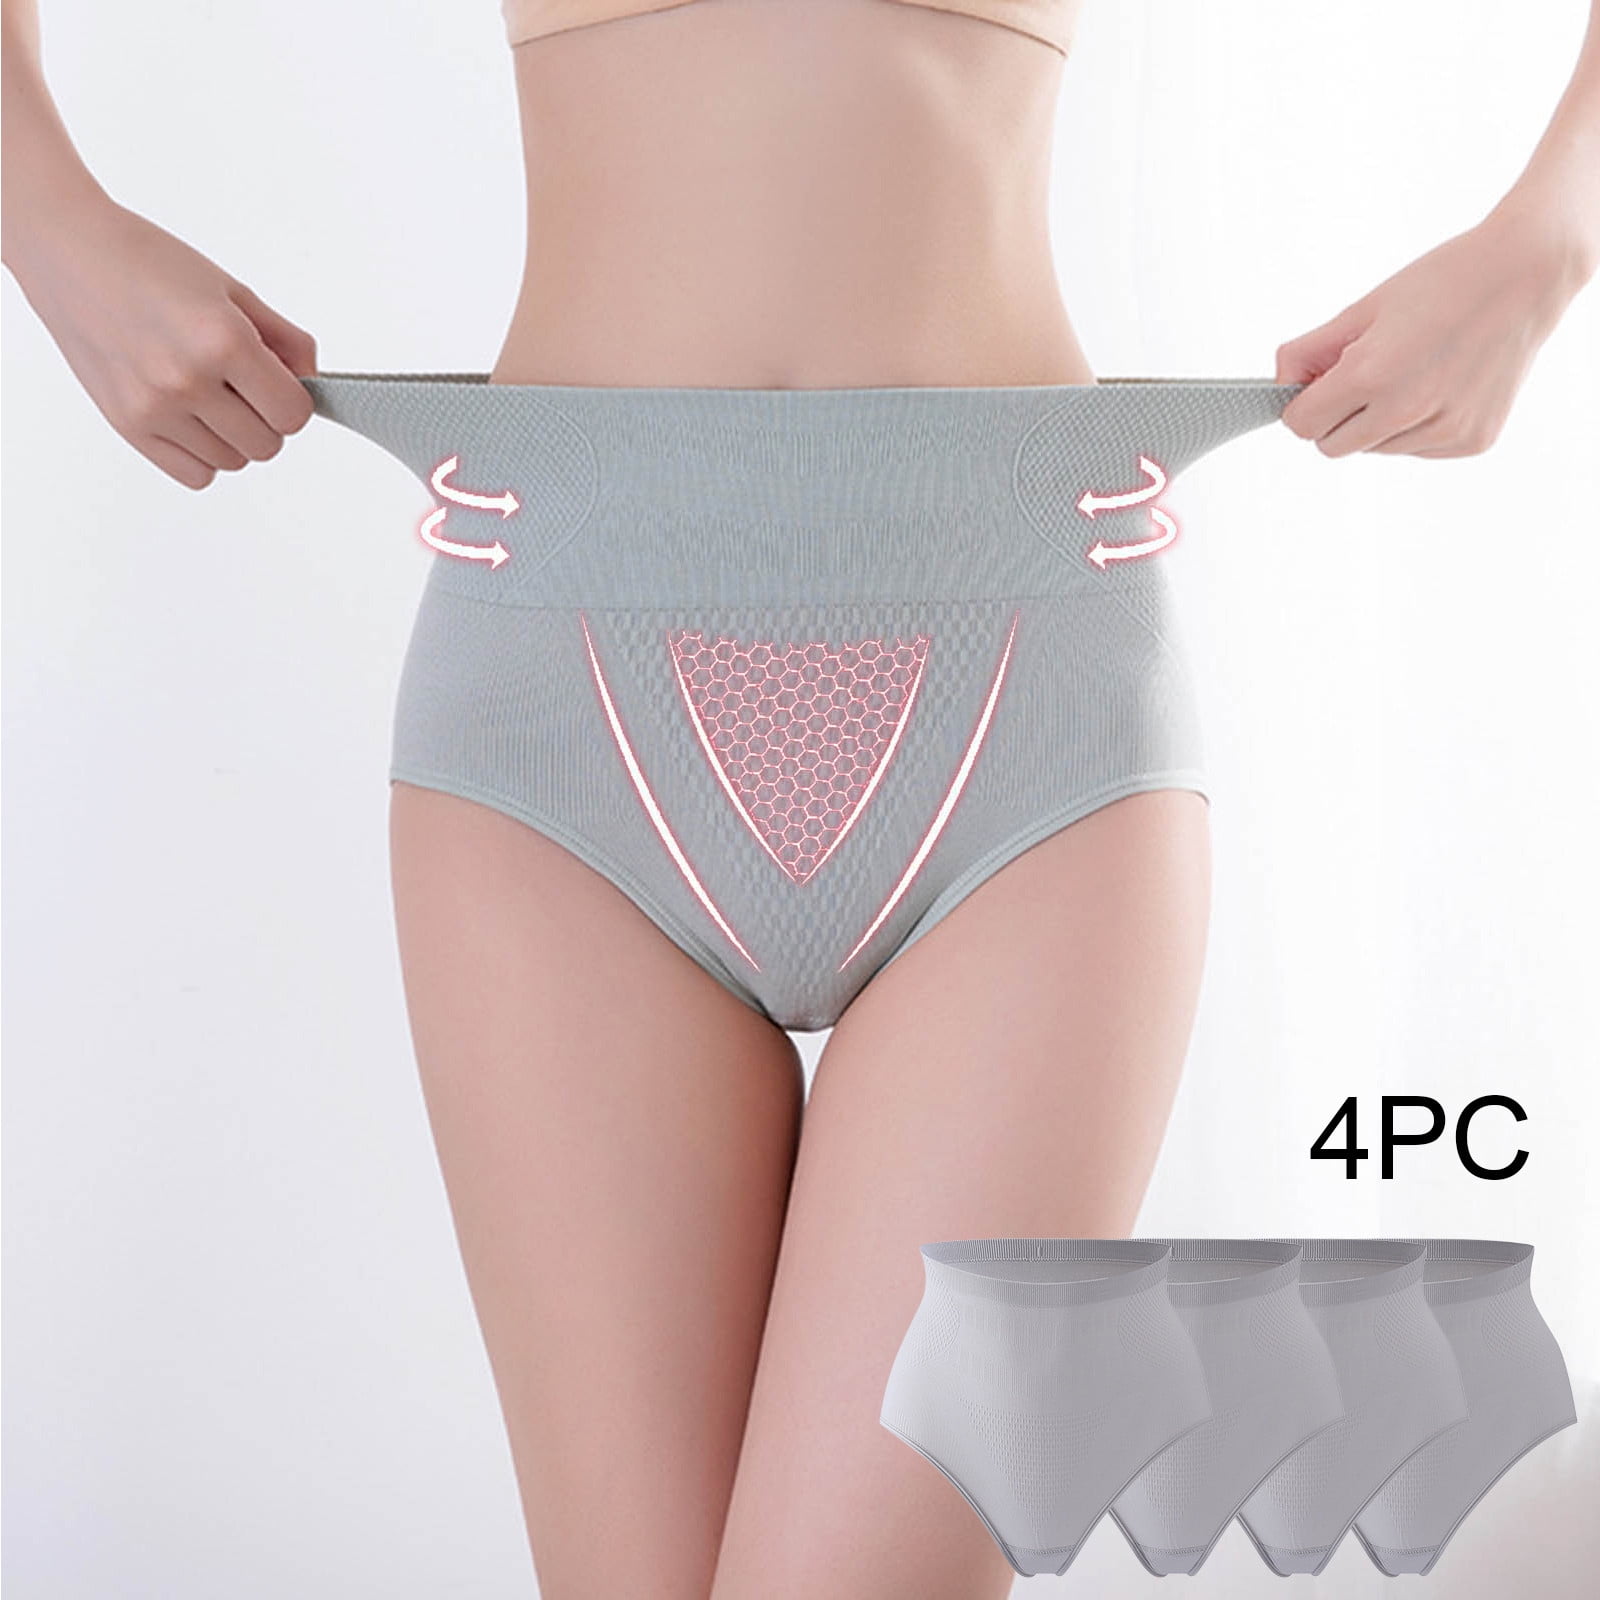 Lolmot Women's High Waist Cotton Underwear Stretch Briefs Soft Comfy Ladies  Panties Seamless Tummy Control Body Shaper Underwear